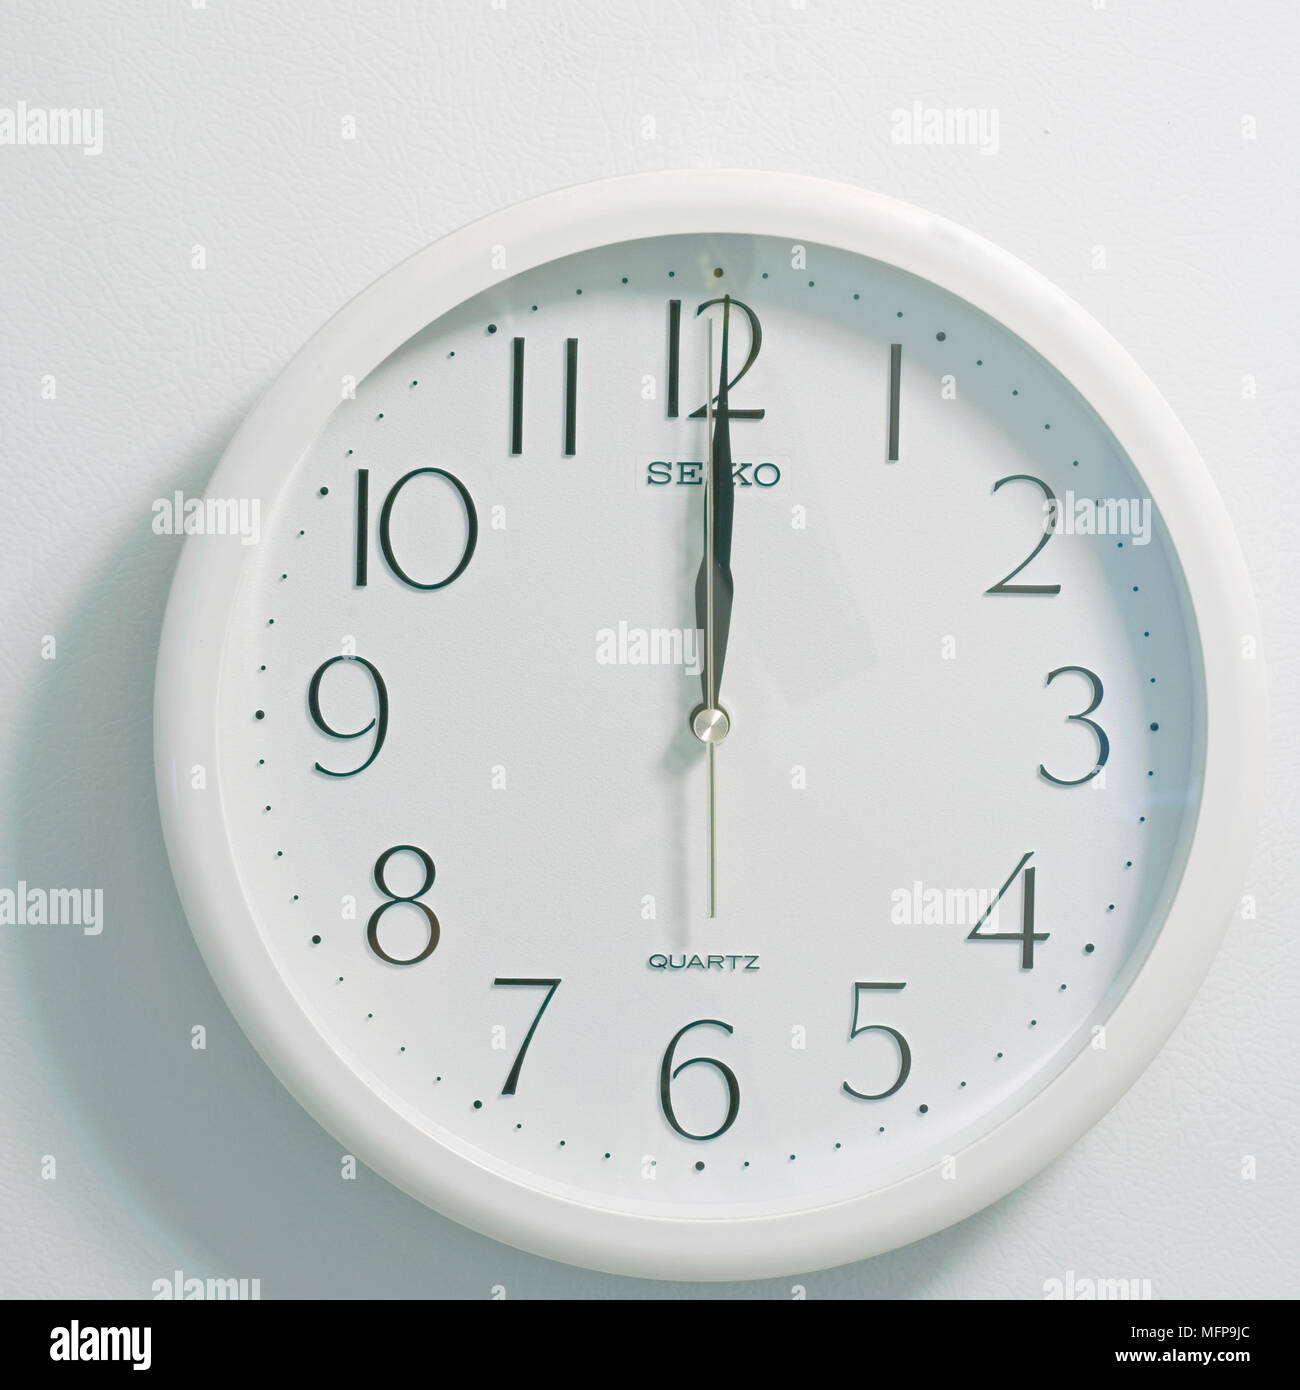 Nahaufnahme des Gesichts des modernen clock Stil, runde weiße und schwarze Zifferblatt zu der Zeit zwölf Uhr Mittag oder Mitternacht auf weißem Hintergrund Stockfoto